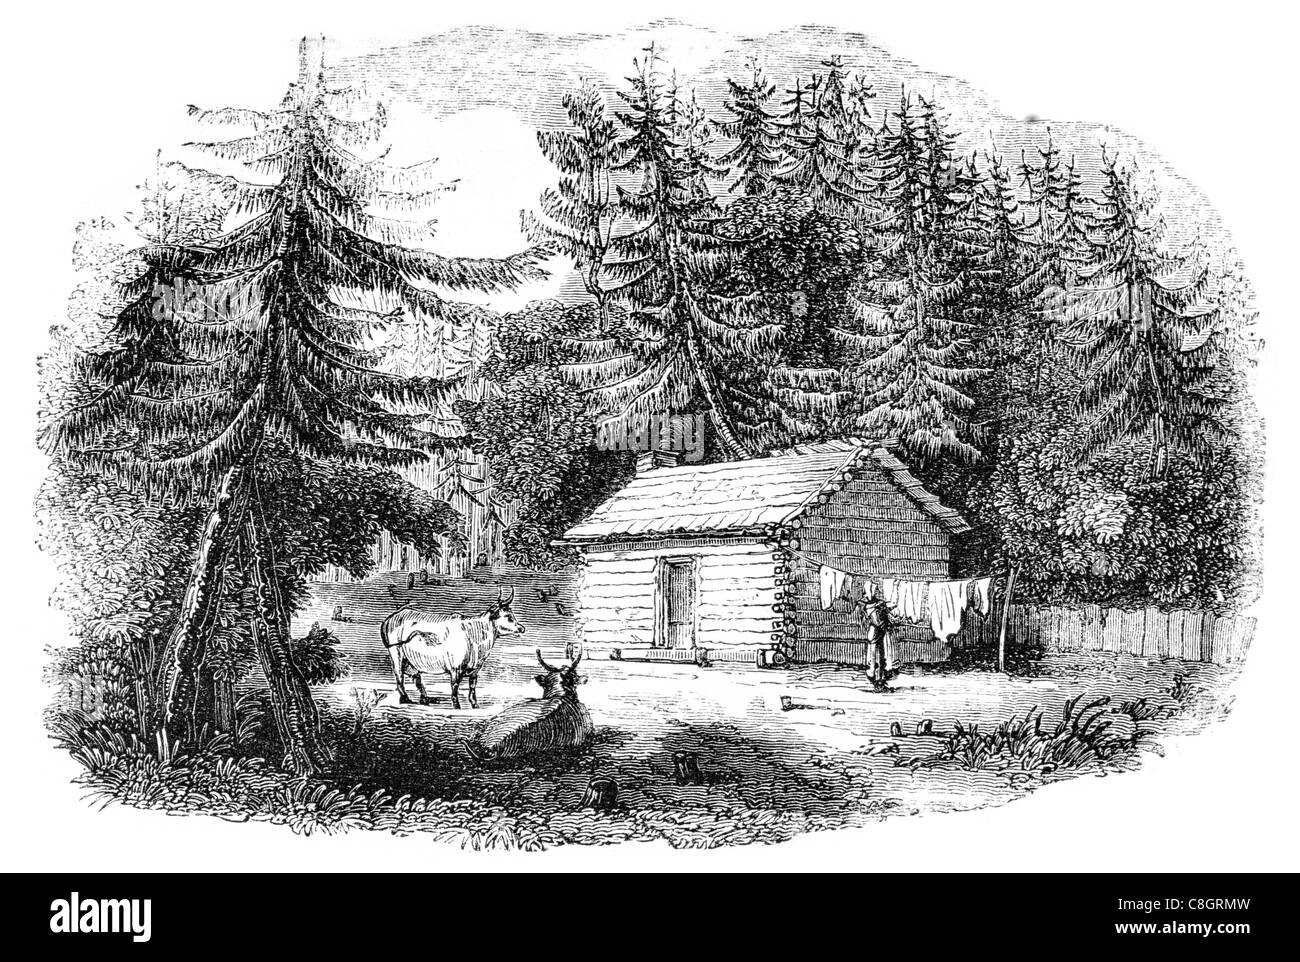 Registro canadese home casa dei registri di cabina rustica caccia log cabin village città prairie carro trainato da cavalli architettura di Colonia Foto Stock